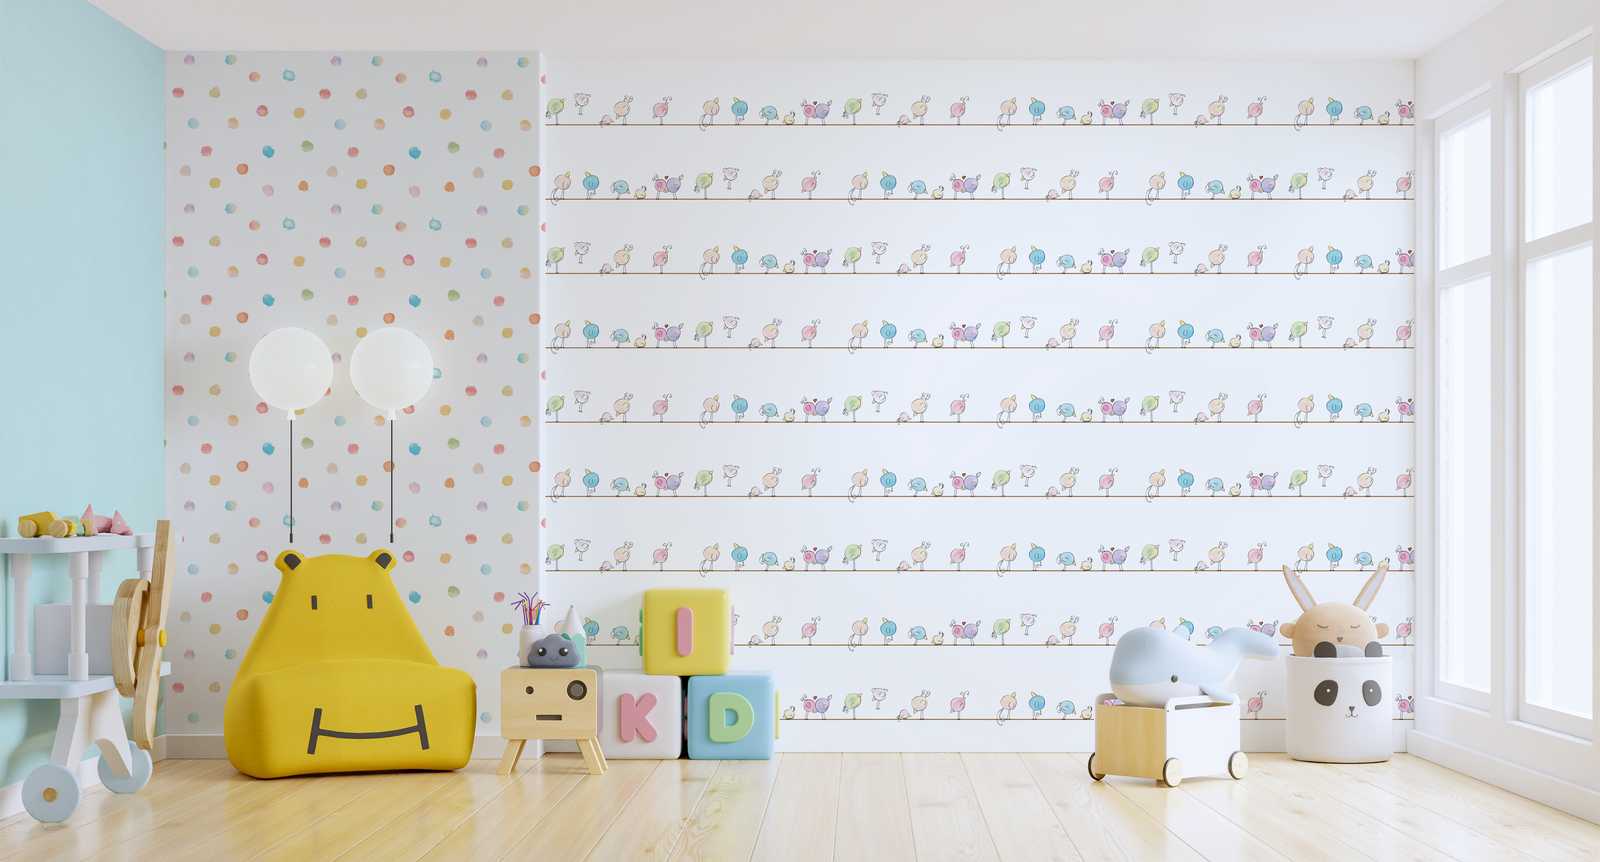             Kinderkamer behang aquarel & vogels - kleurrijk, wit, blauw
        